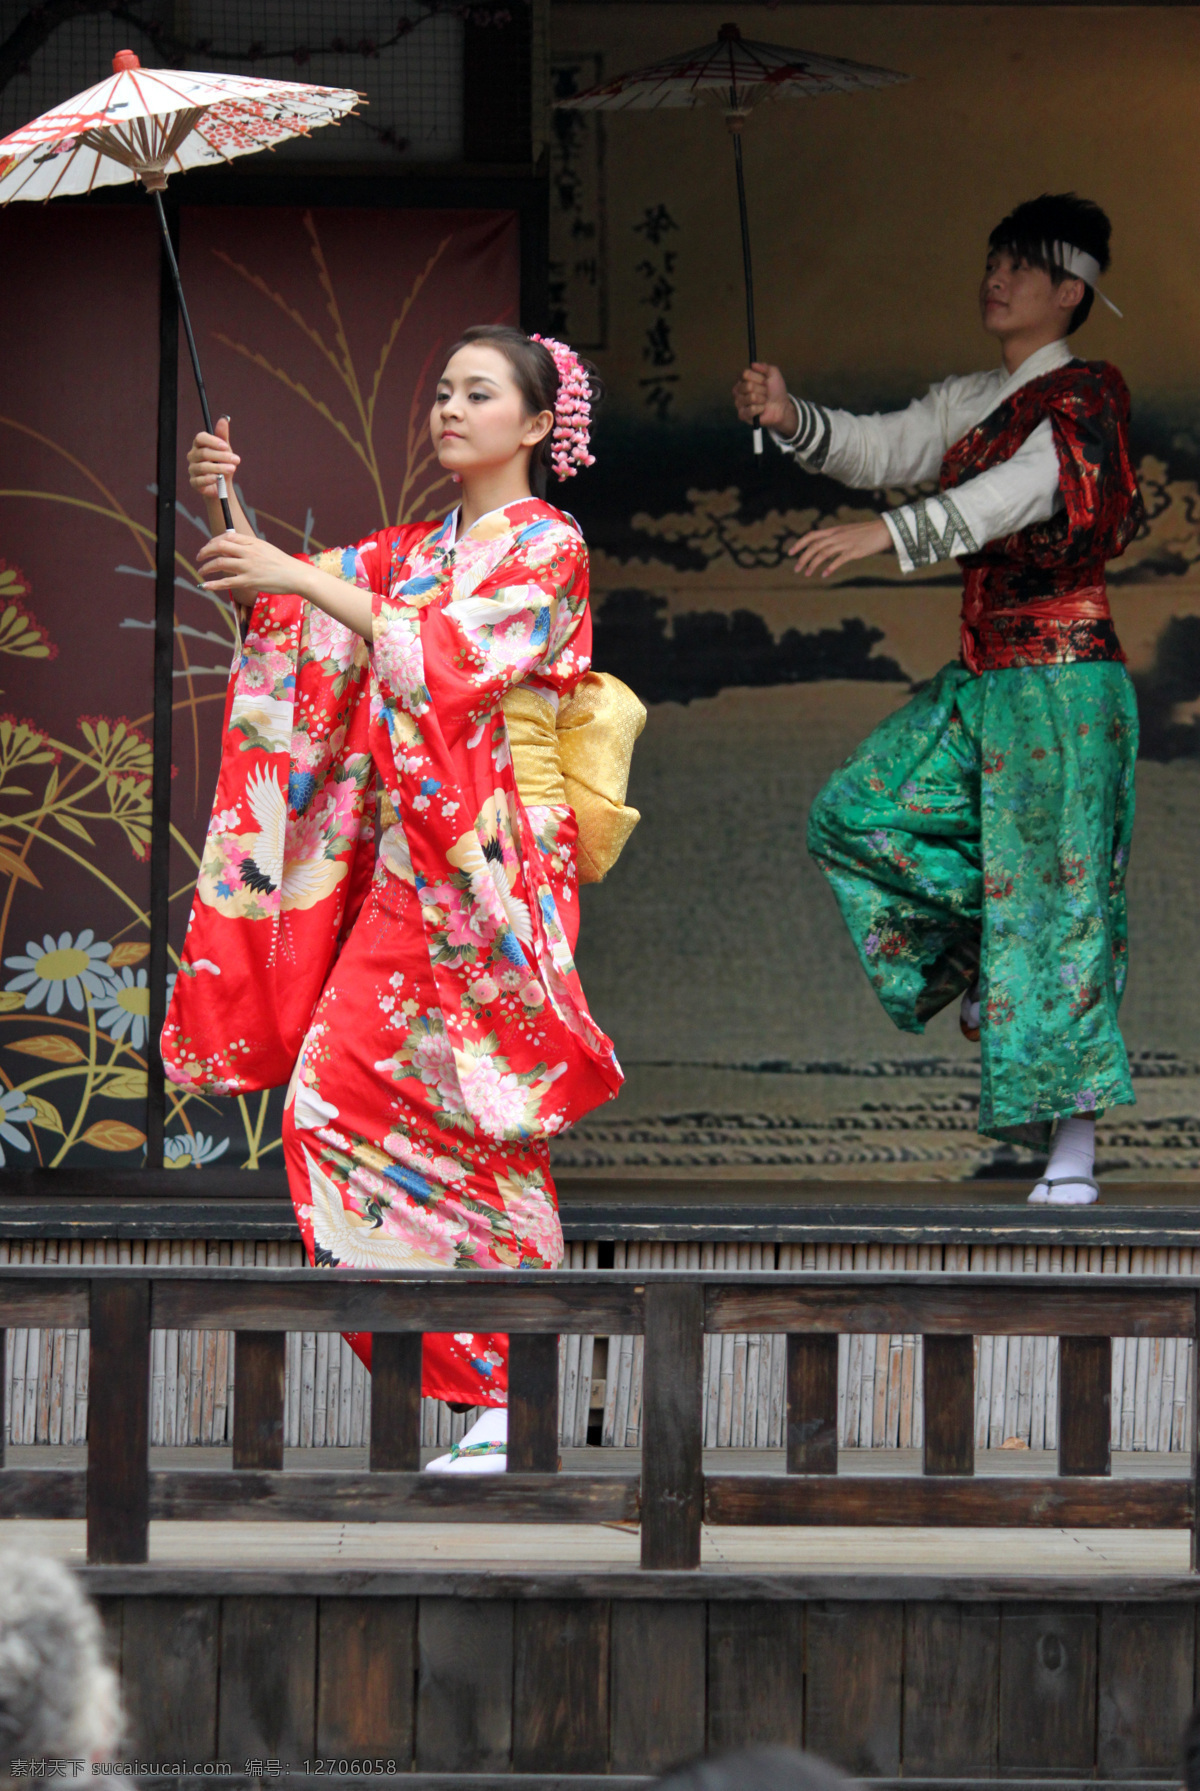 表演 和服 跳舞 文化艺术 舞蹈音乐 日本 民俗风情 演义 日本民俗 风情演义 世界之窗 日本舞蹈 日本风情 舞伞 psd源文件